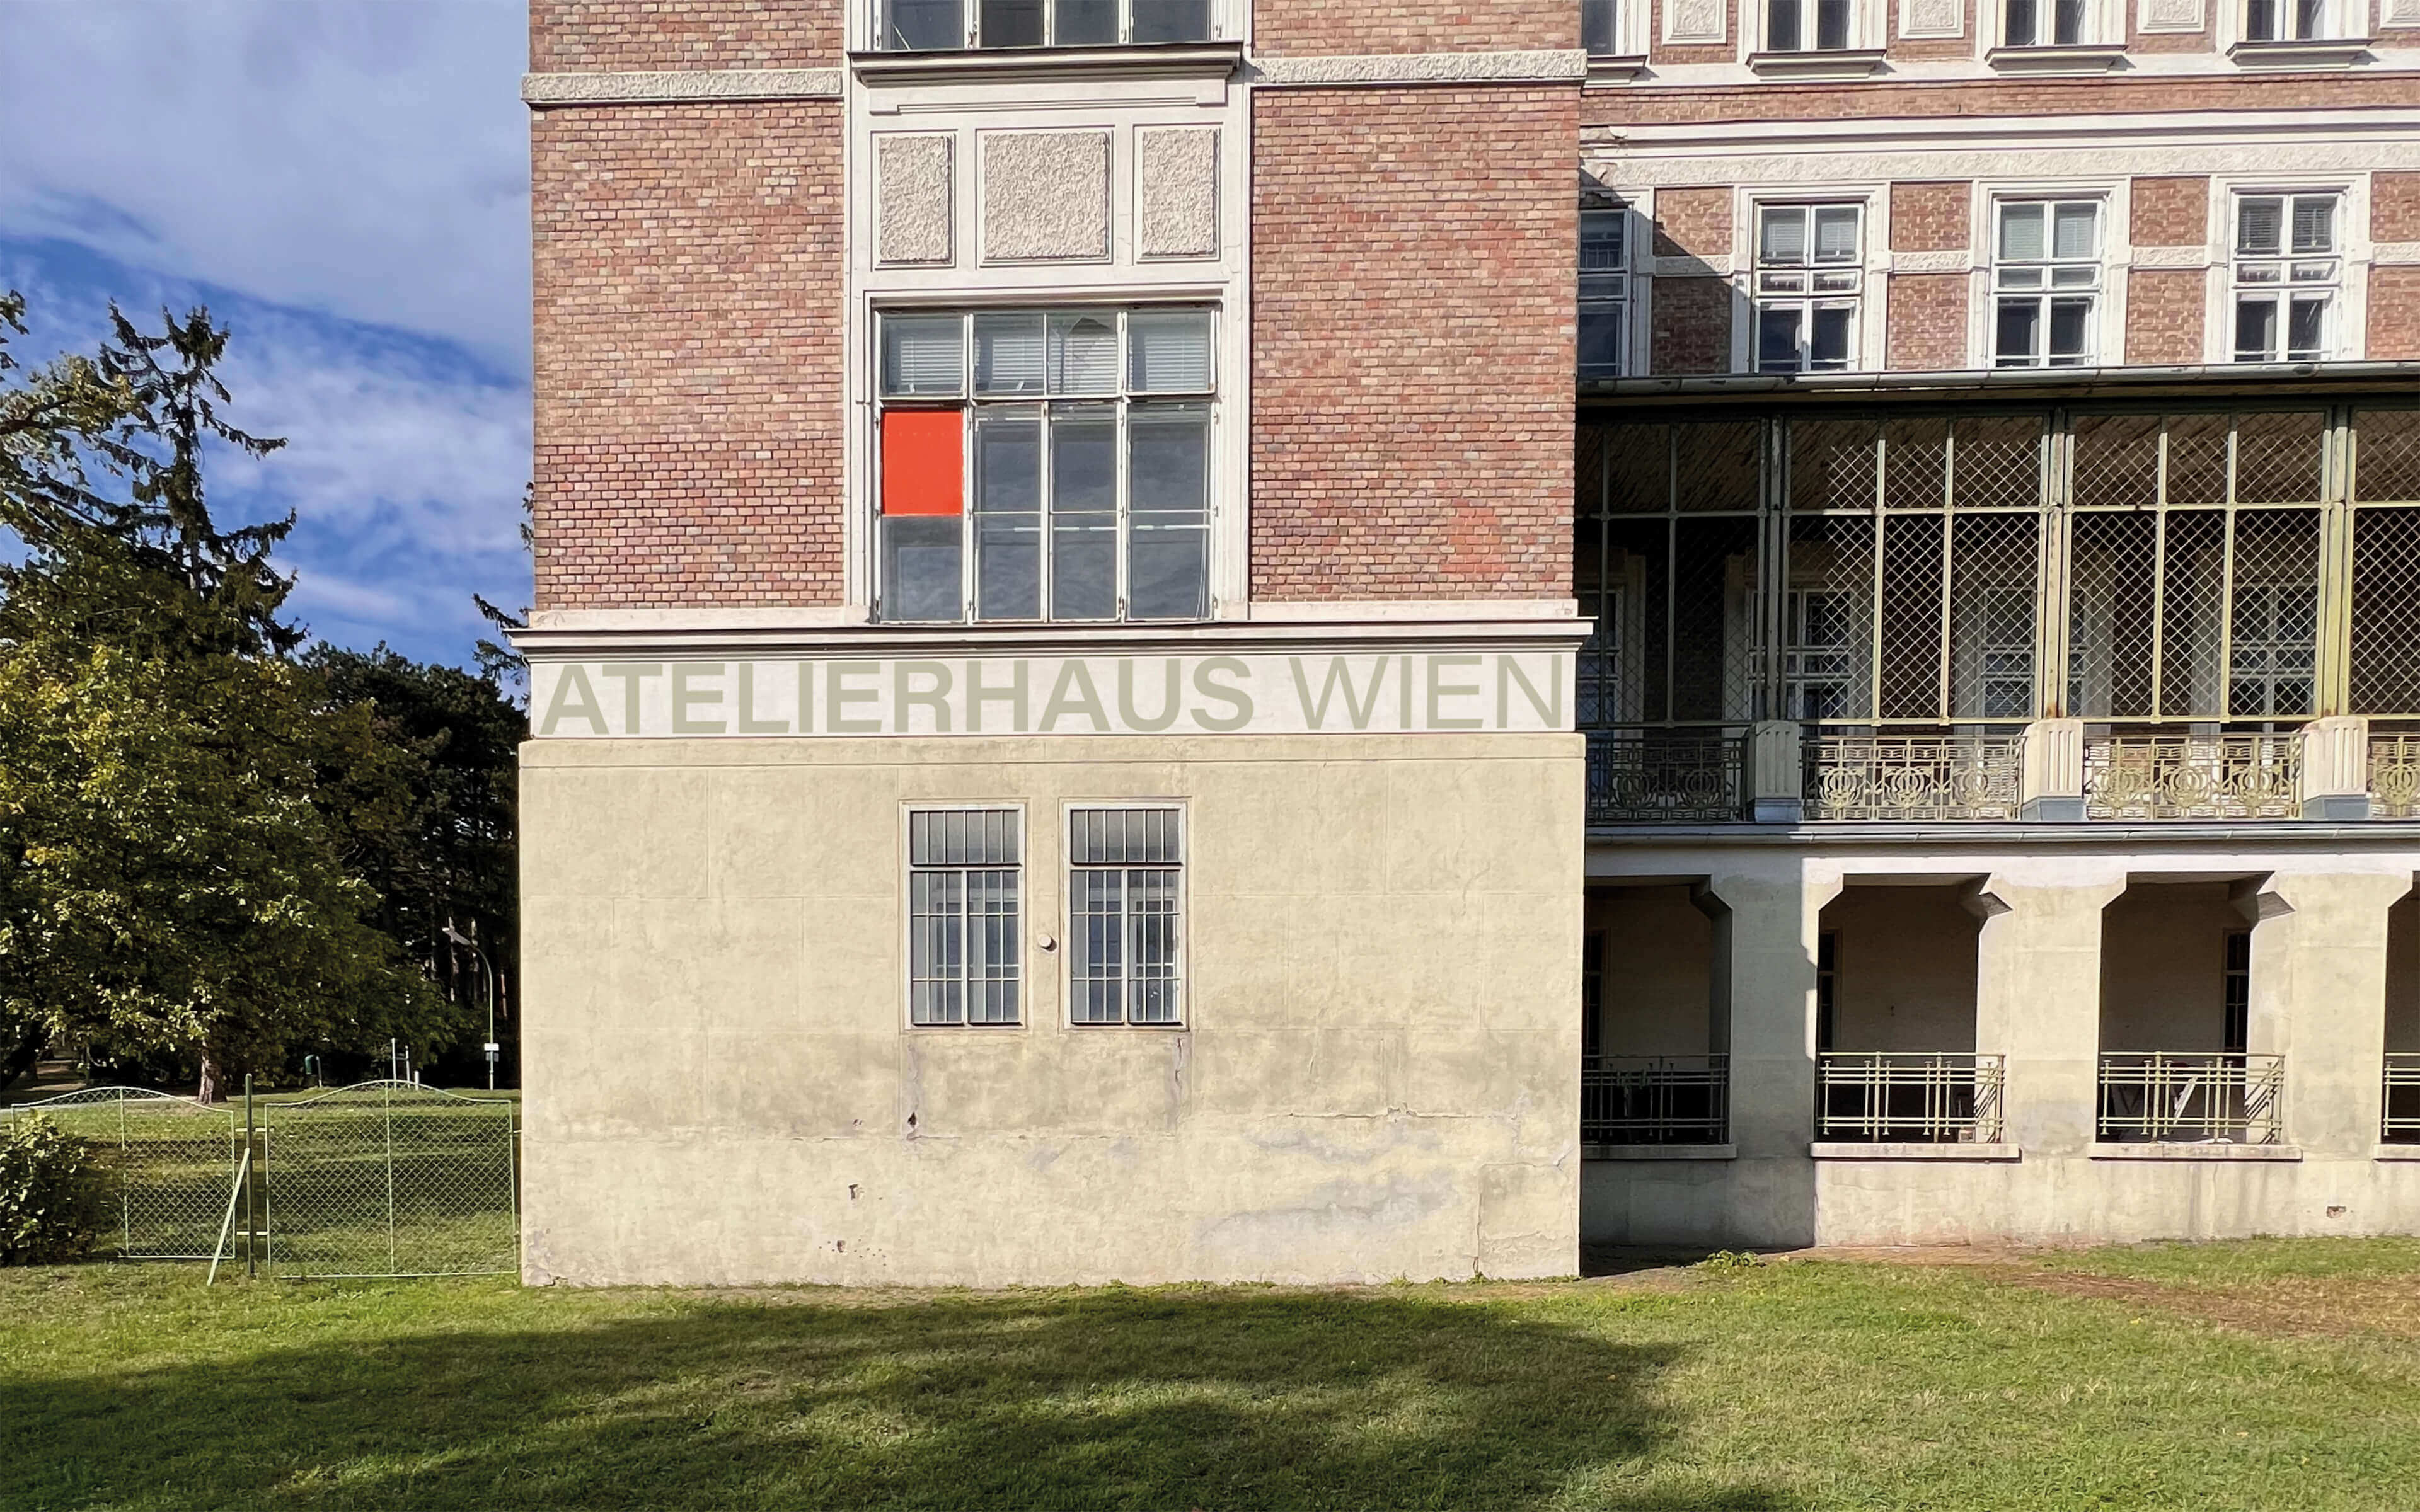 Atelierhaus Wien